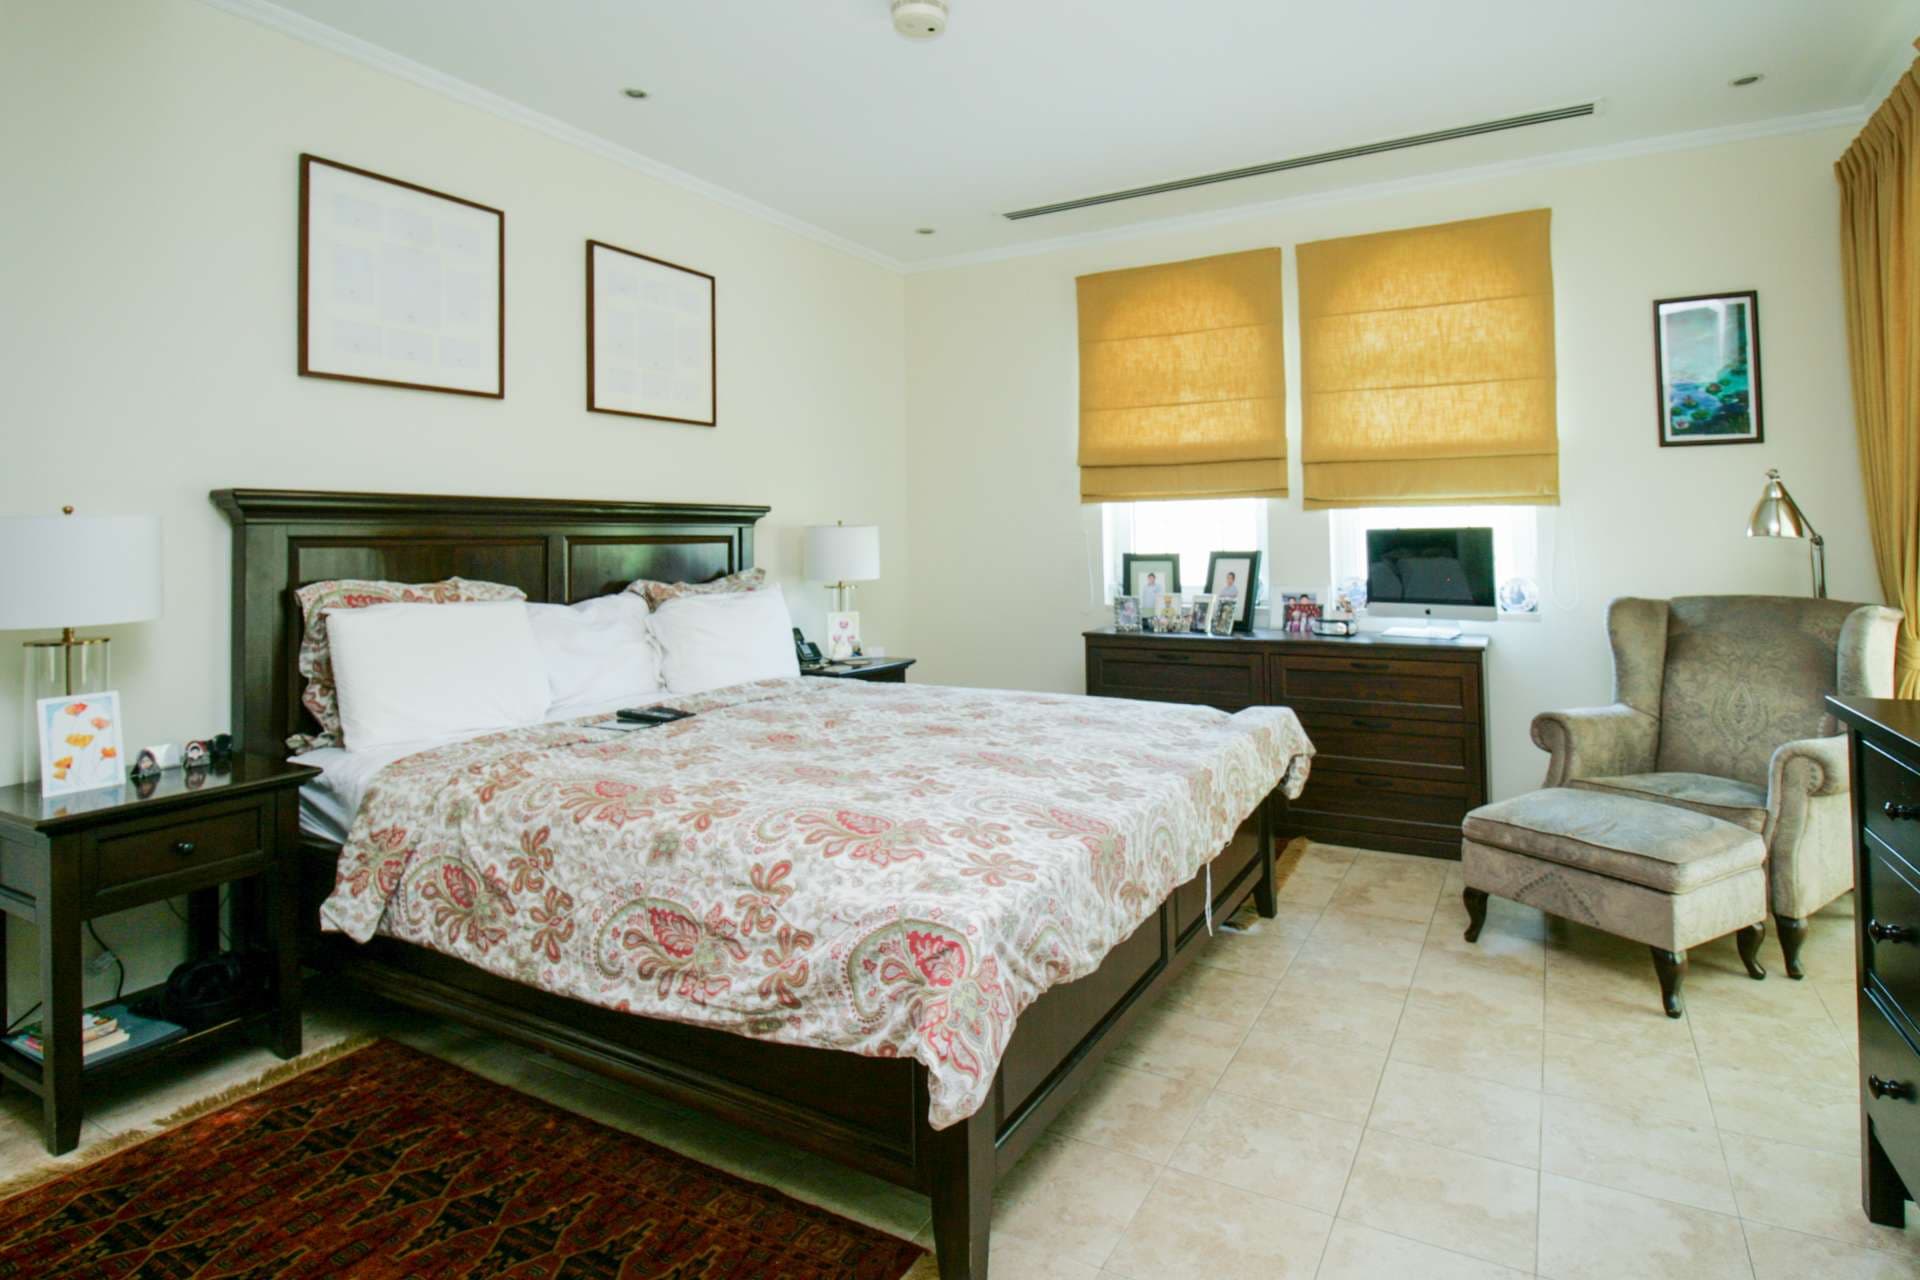 3 Bedroom Villa For Sale Legacy Lp04841 151e4743ae1e1100.jpg